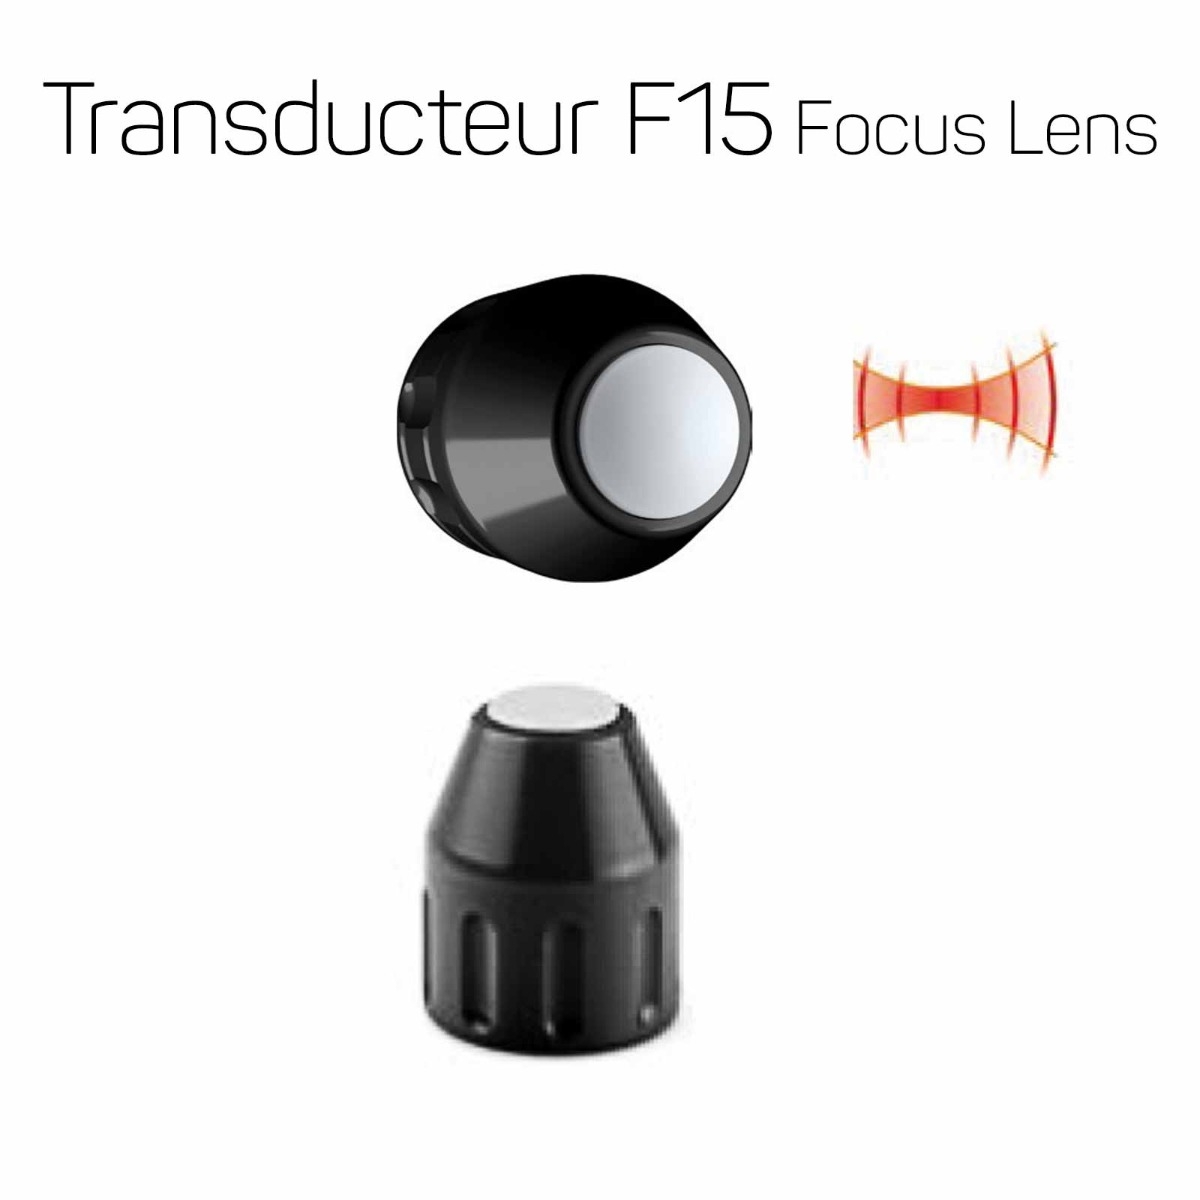 Transducteur F15 à lentille focale